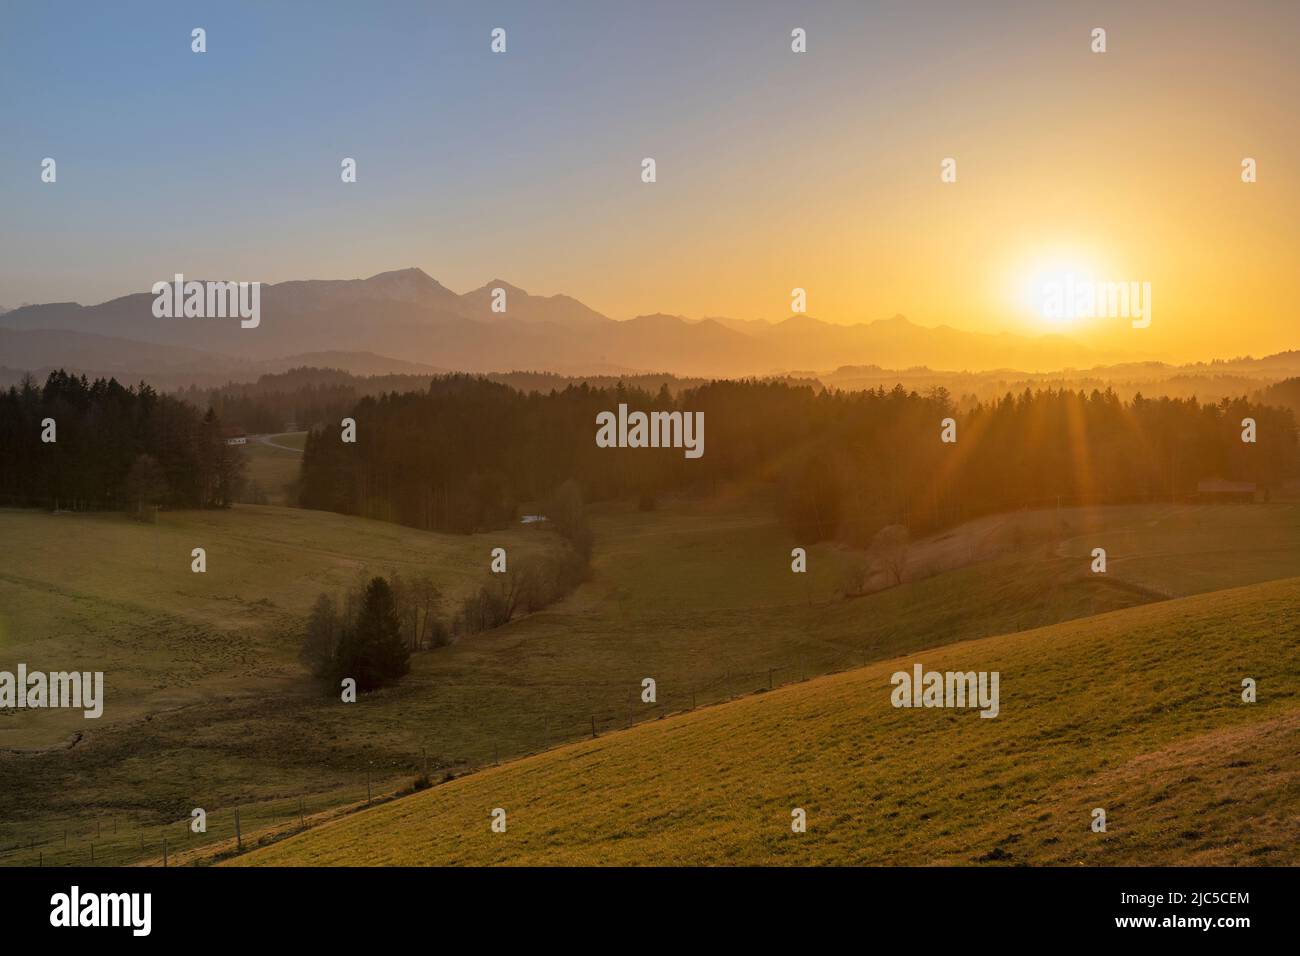 Sonnenuntergang hinter den Chiemgauer Bergen  (Surbergbichl - Neukirchen - Surberg)  Stimmung mit Saharastaub Stock Photo